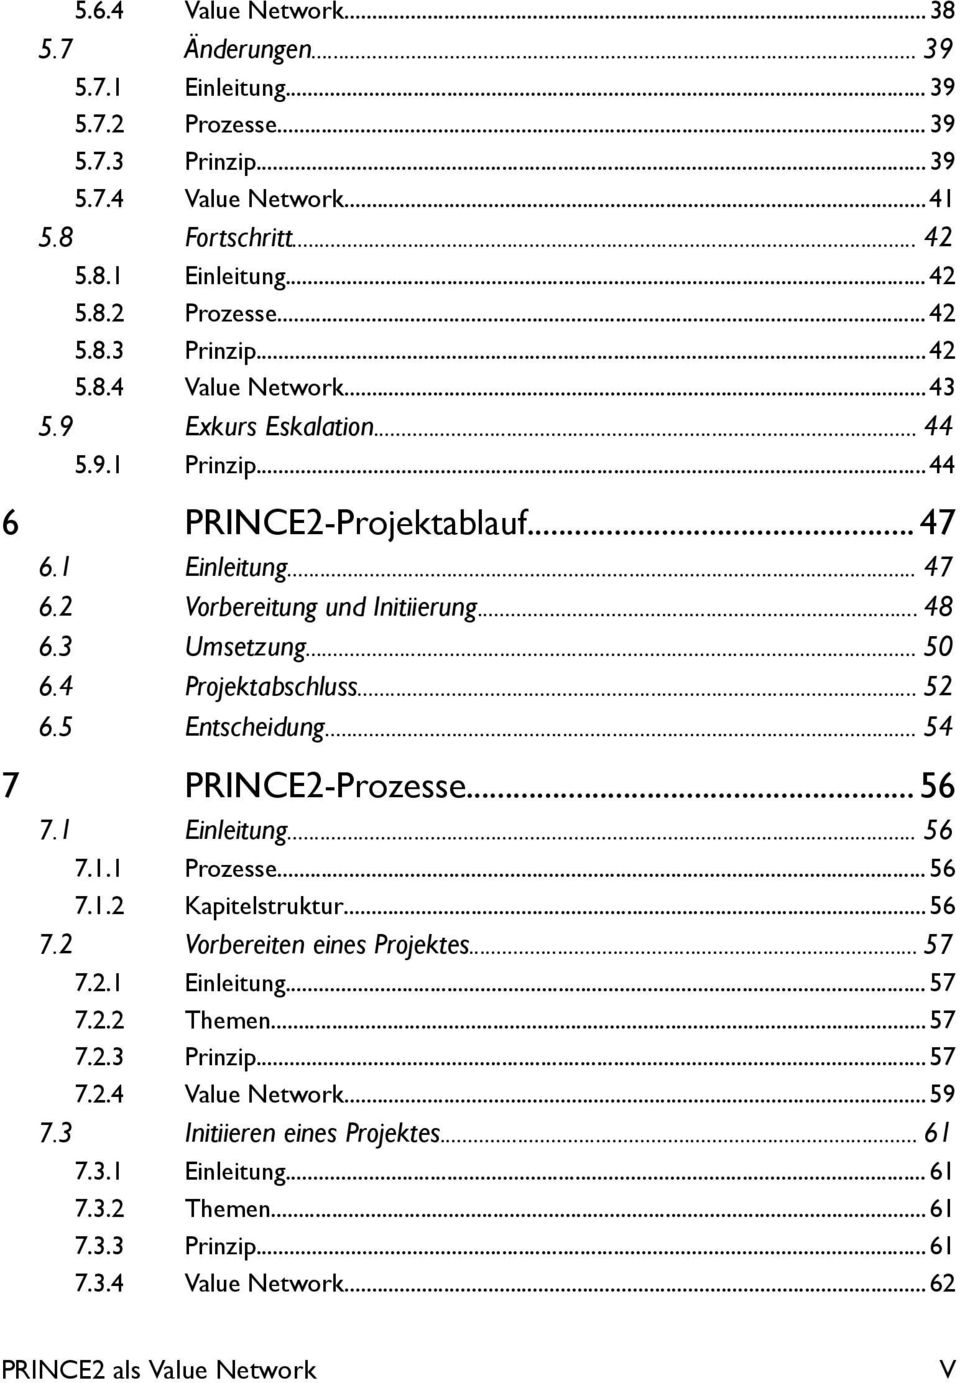 .. 54 7 PRINCE2-Prozesse... 56 7.1 Einleitung... 56 7.1.1 Prozesse... 56 7.1.2 Kapitelstruktur...56 7.2 Vorbereiten eines Projektes... 57 7.2.1 Einleitung... 57 7.2.2 Themen...57 7.2.3 Prinzip...57 7.2.4 Value Network.